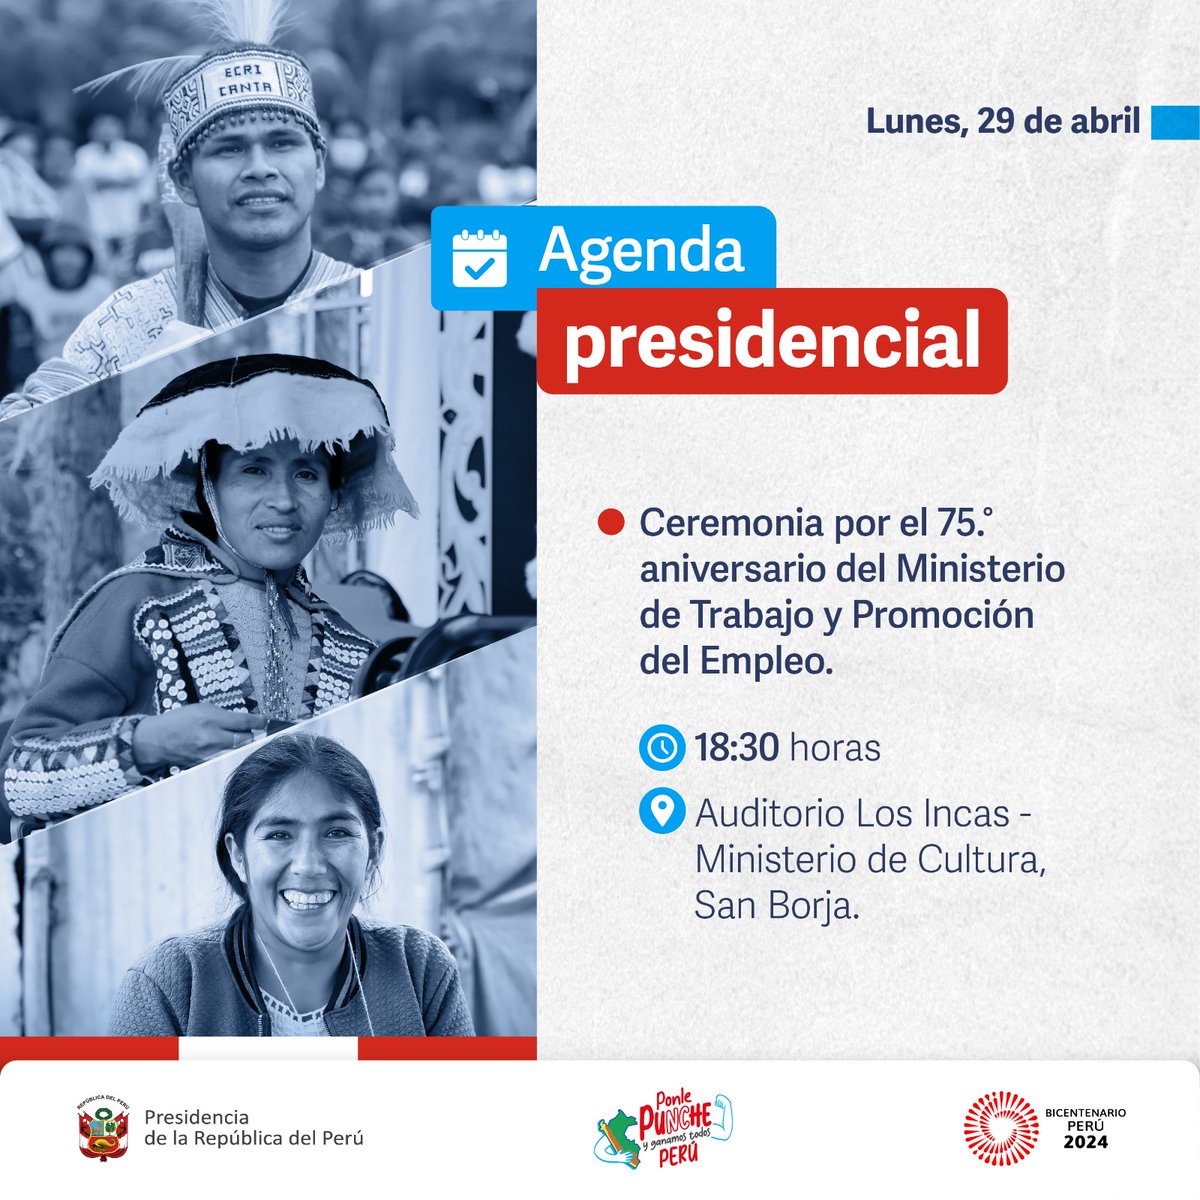 #AagendaPresidencial | La mandataria Dina Boluarte participará en la ceremonia por el 75.° aniversario del @MTPE_Peru. #PonlePunchePerú 💪 #BicentenarioPerú2024